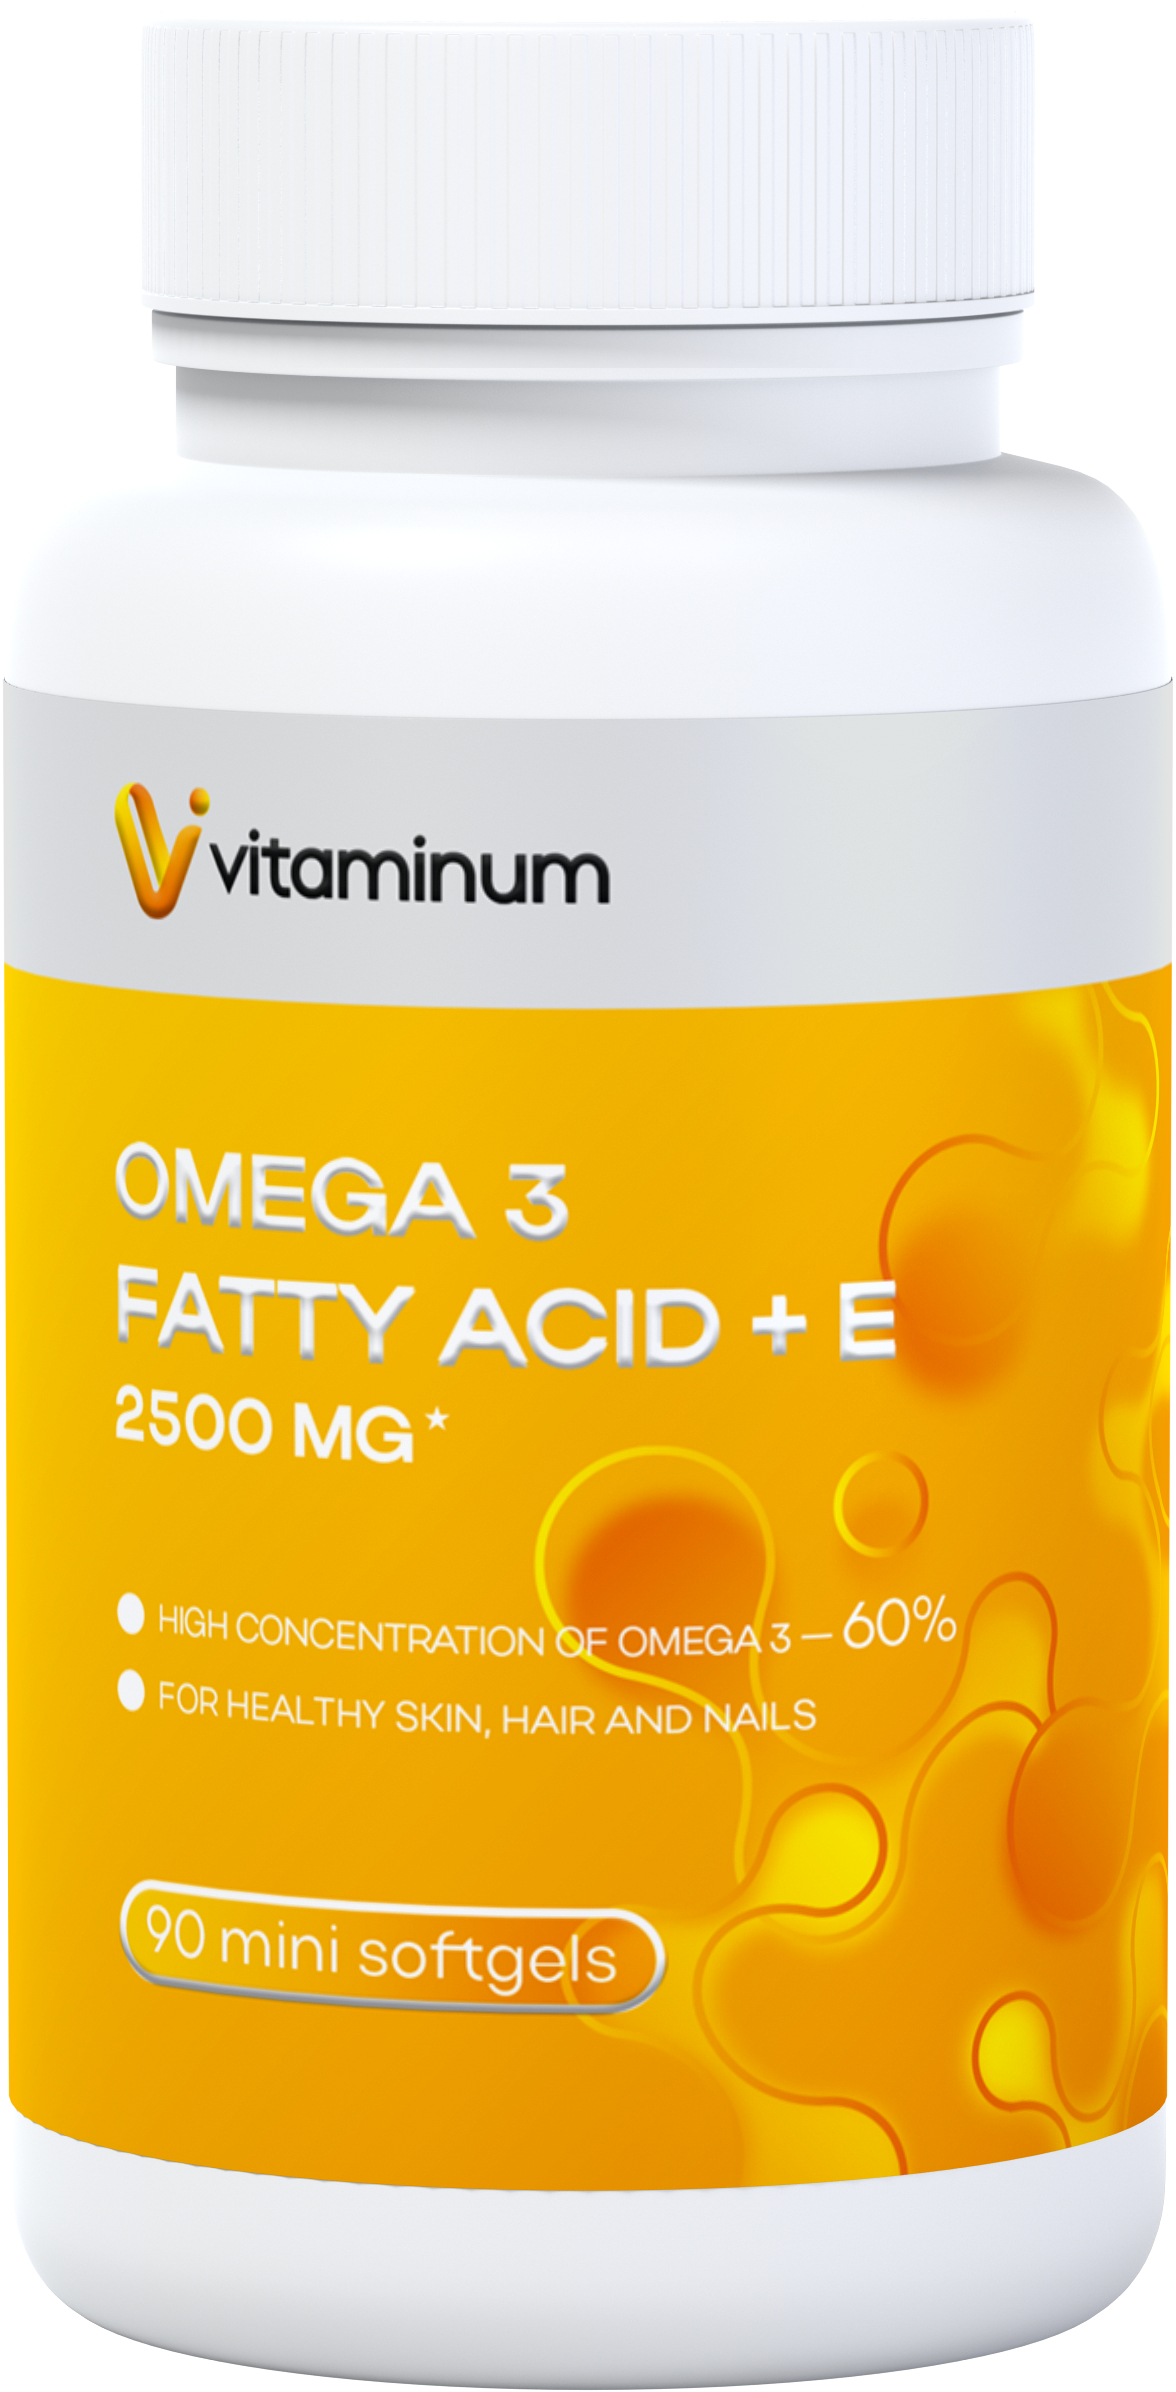  Vitaminum ОМЕГА 3 60% + витамин Е (2500 MG*) 90 капсул 700 мг   в Озерске